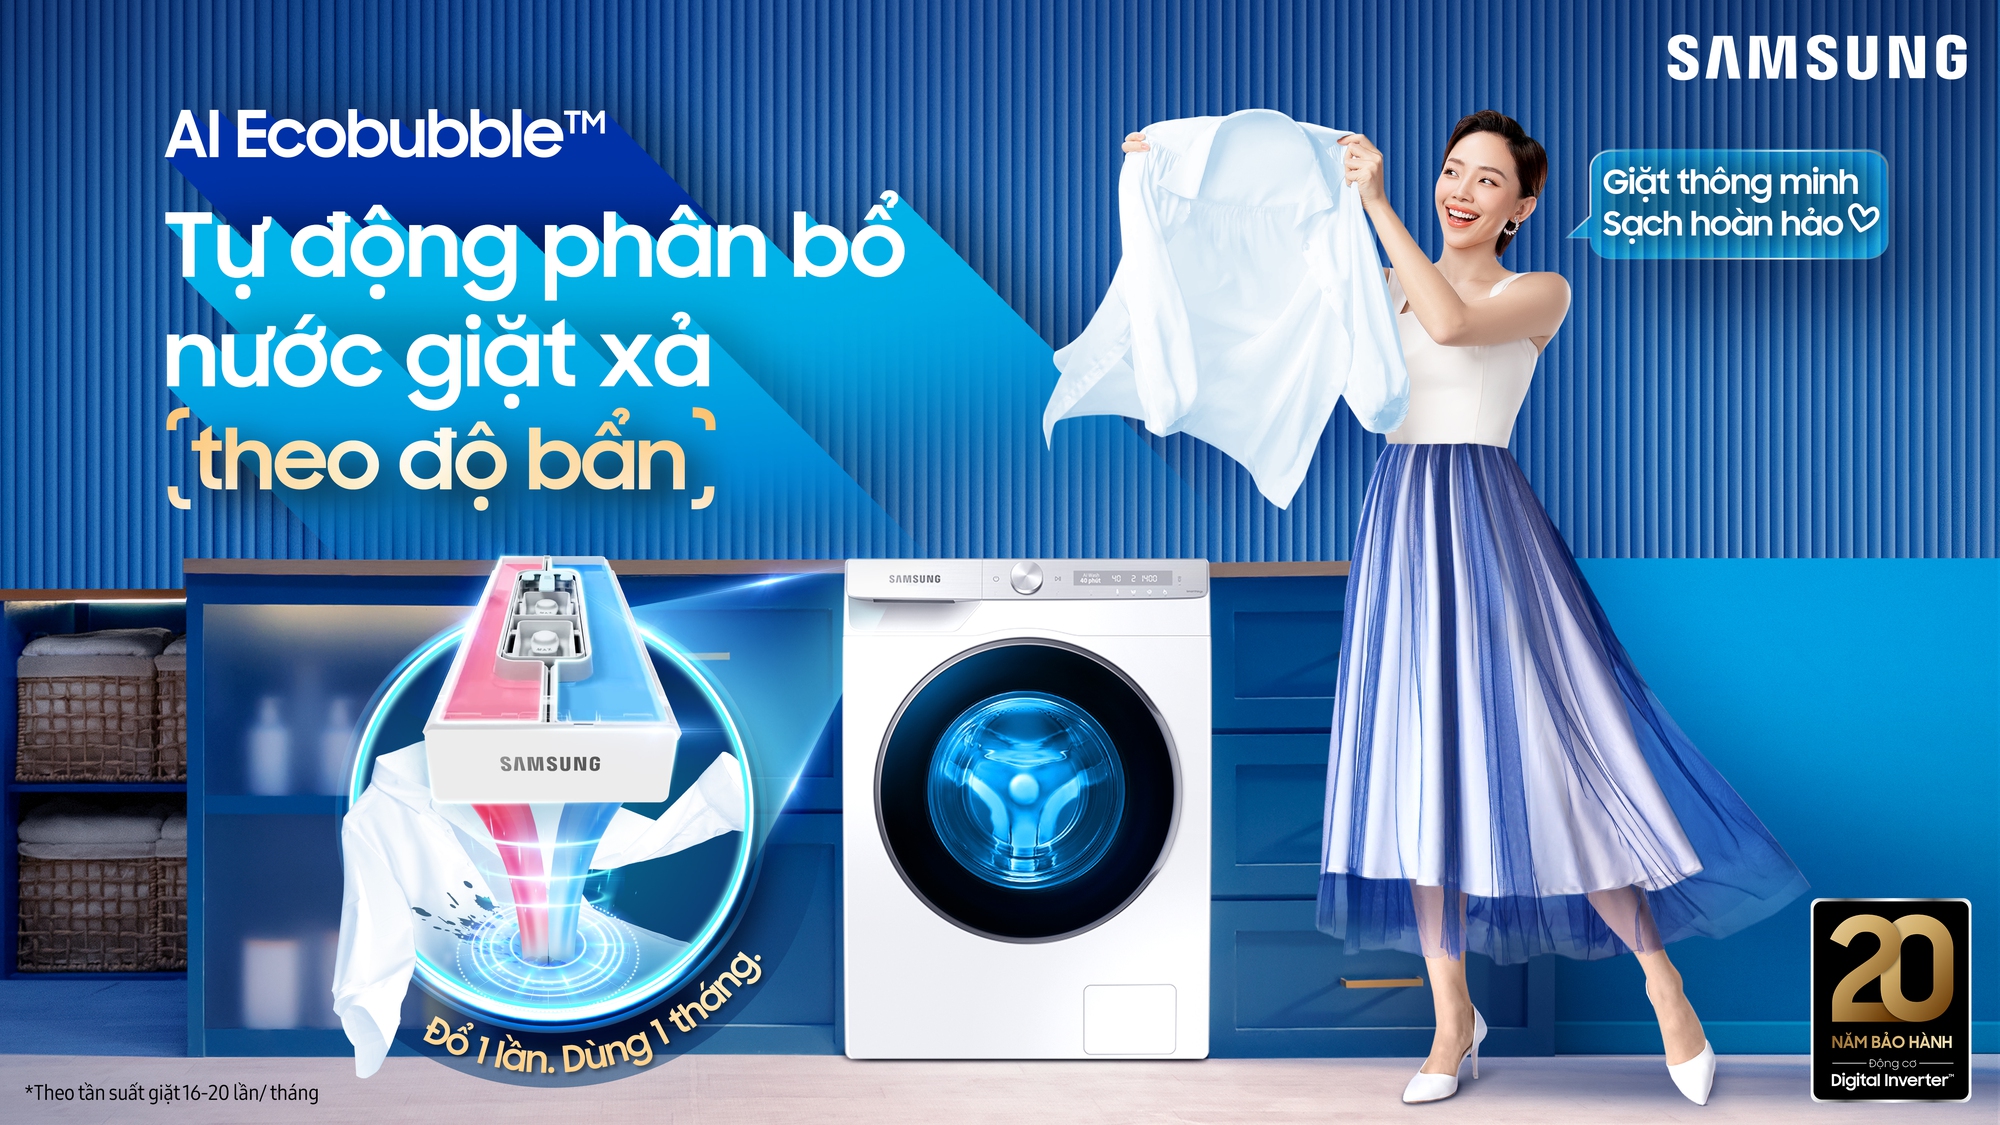 Samsung thiết lập chuẩn máy giặt mới với Ngăn giặt xả tự động dẫn đầu công nghệ AI - Ảnh 1.